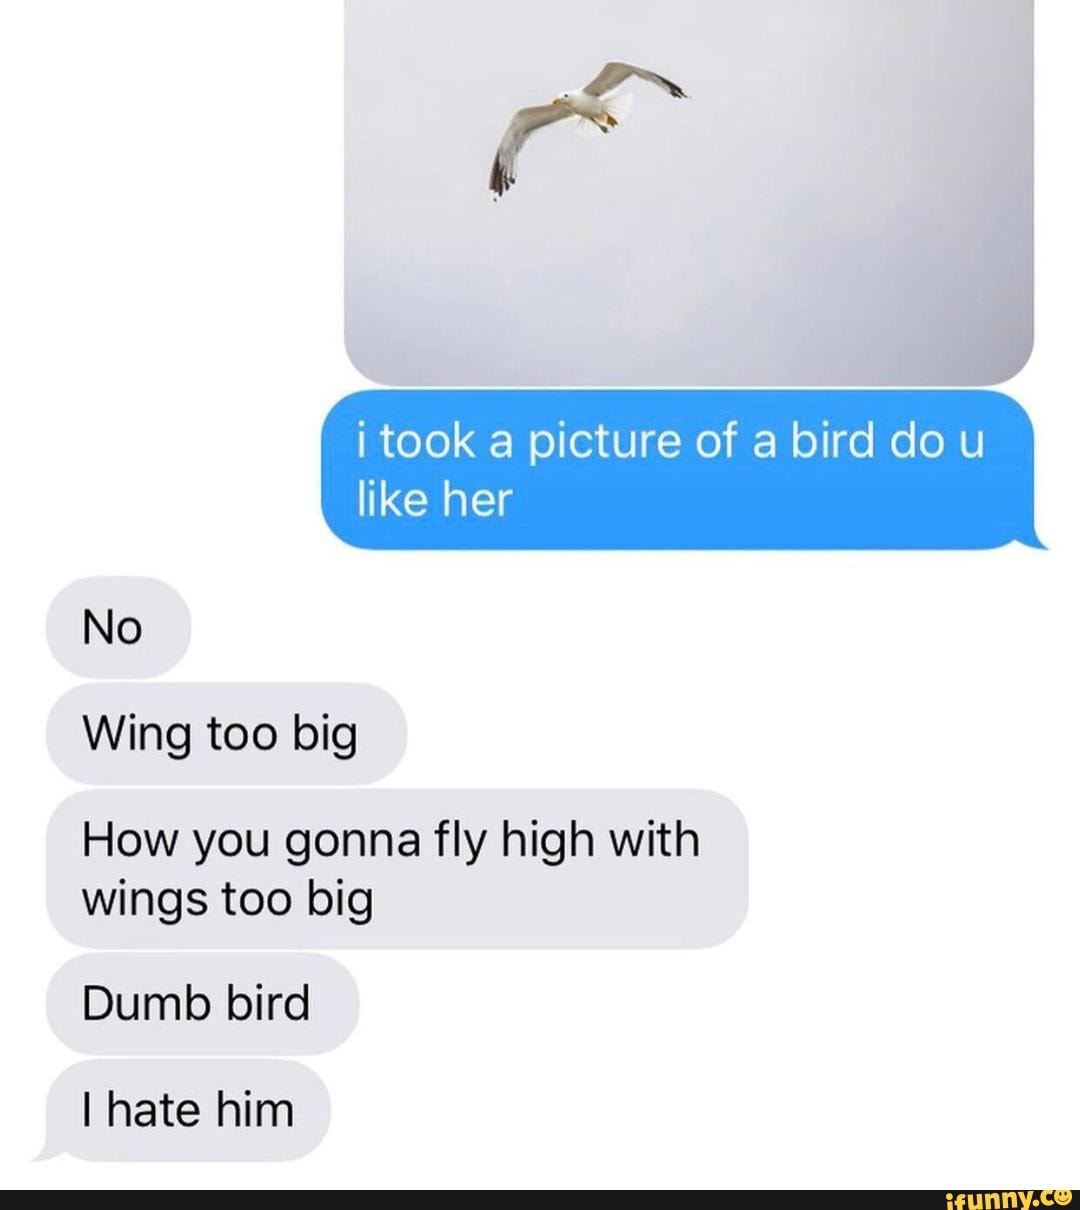 She likes birds